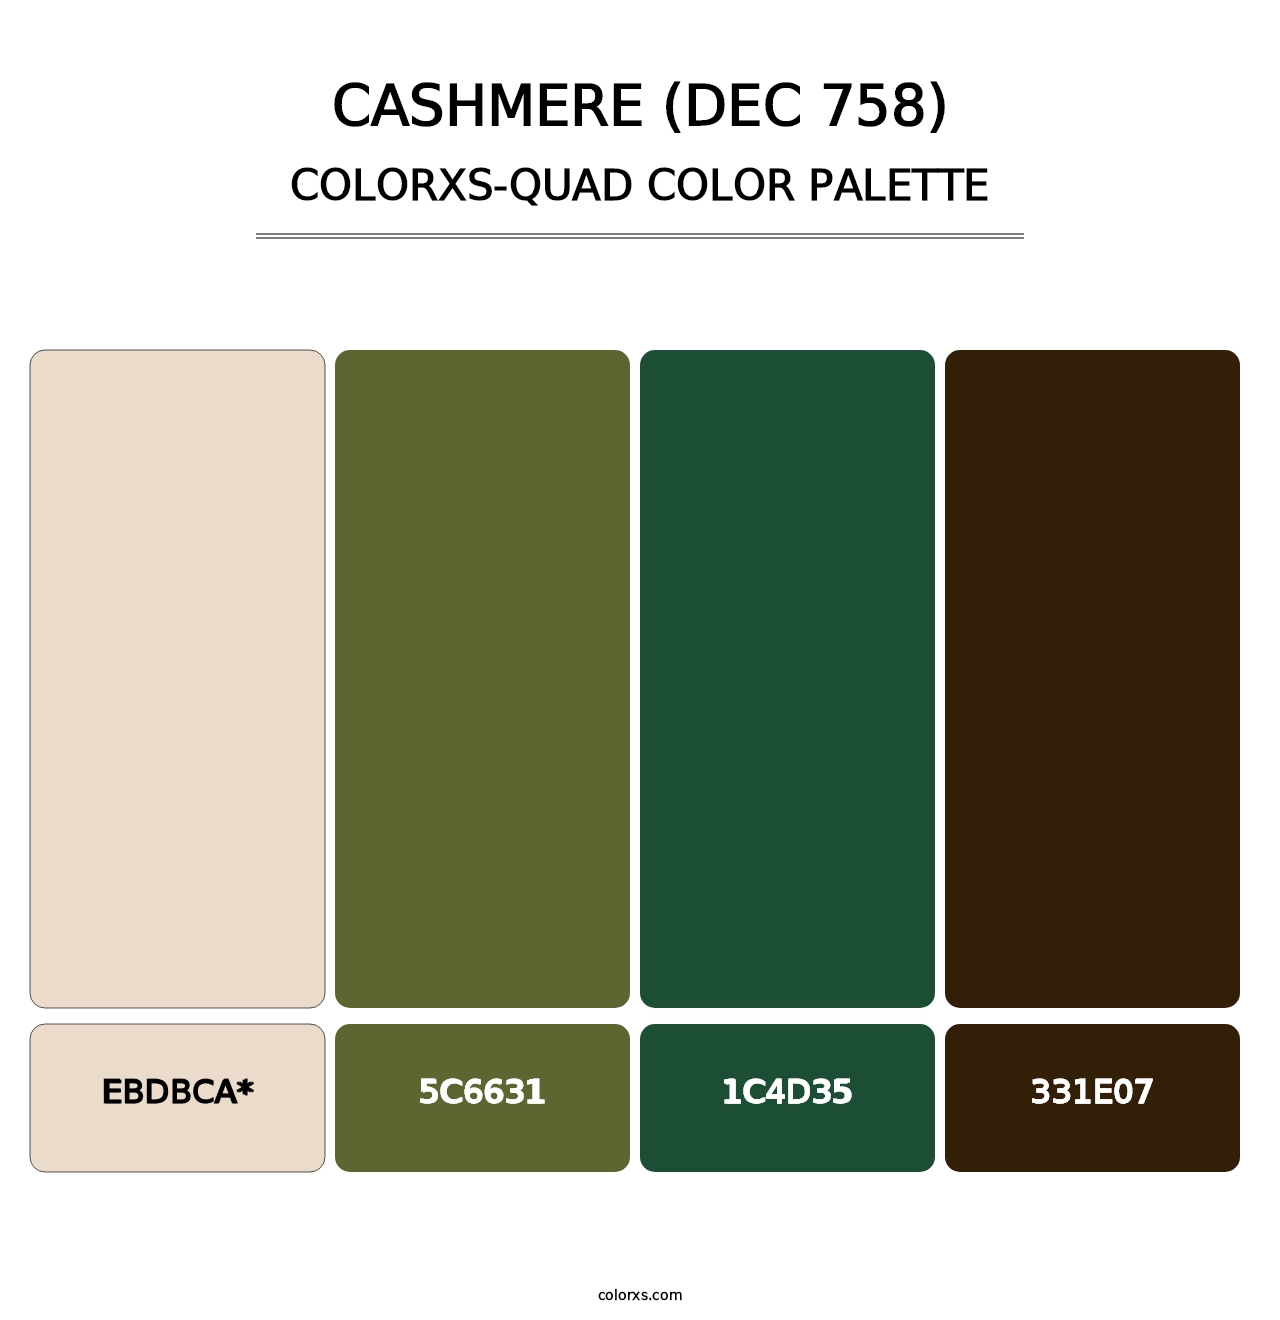 Cashmere (DEC 758) - Colorxs Quad Palette